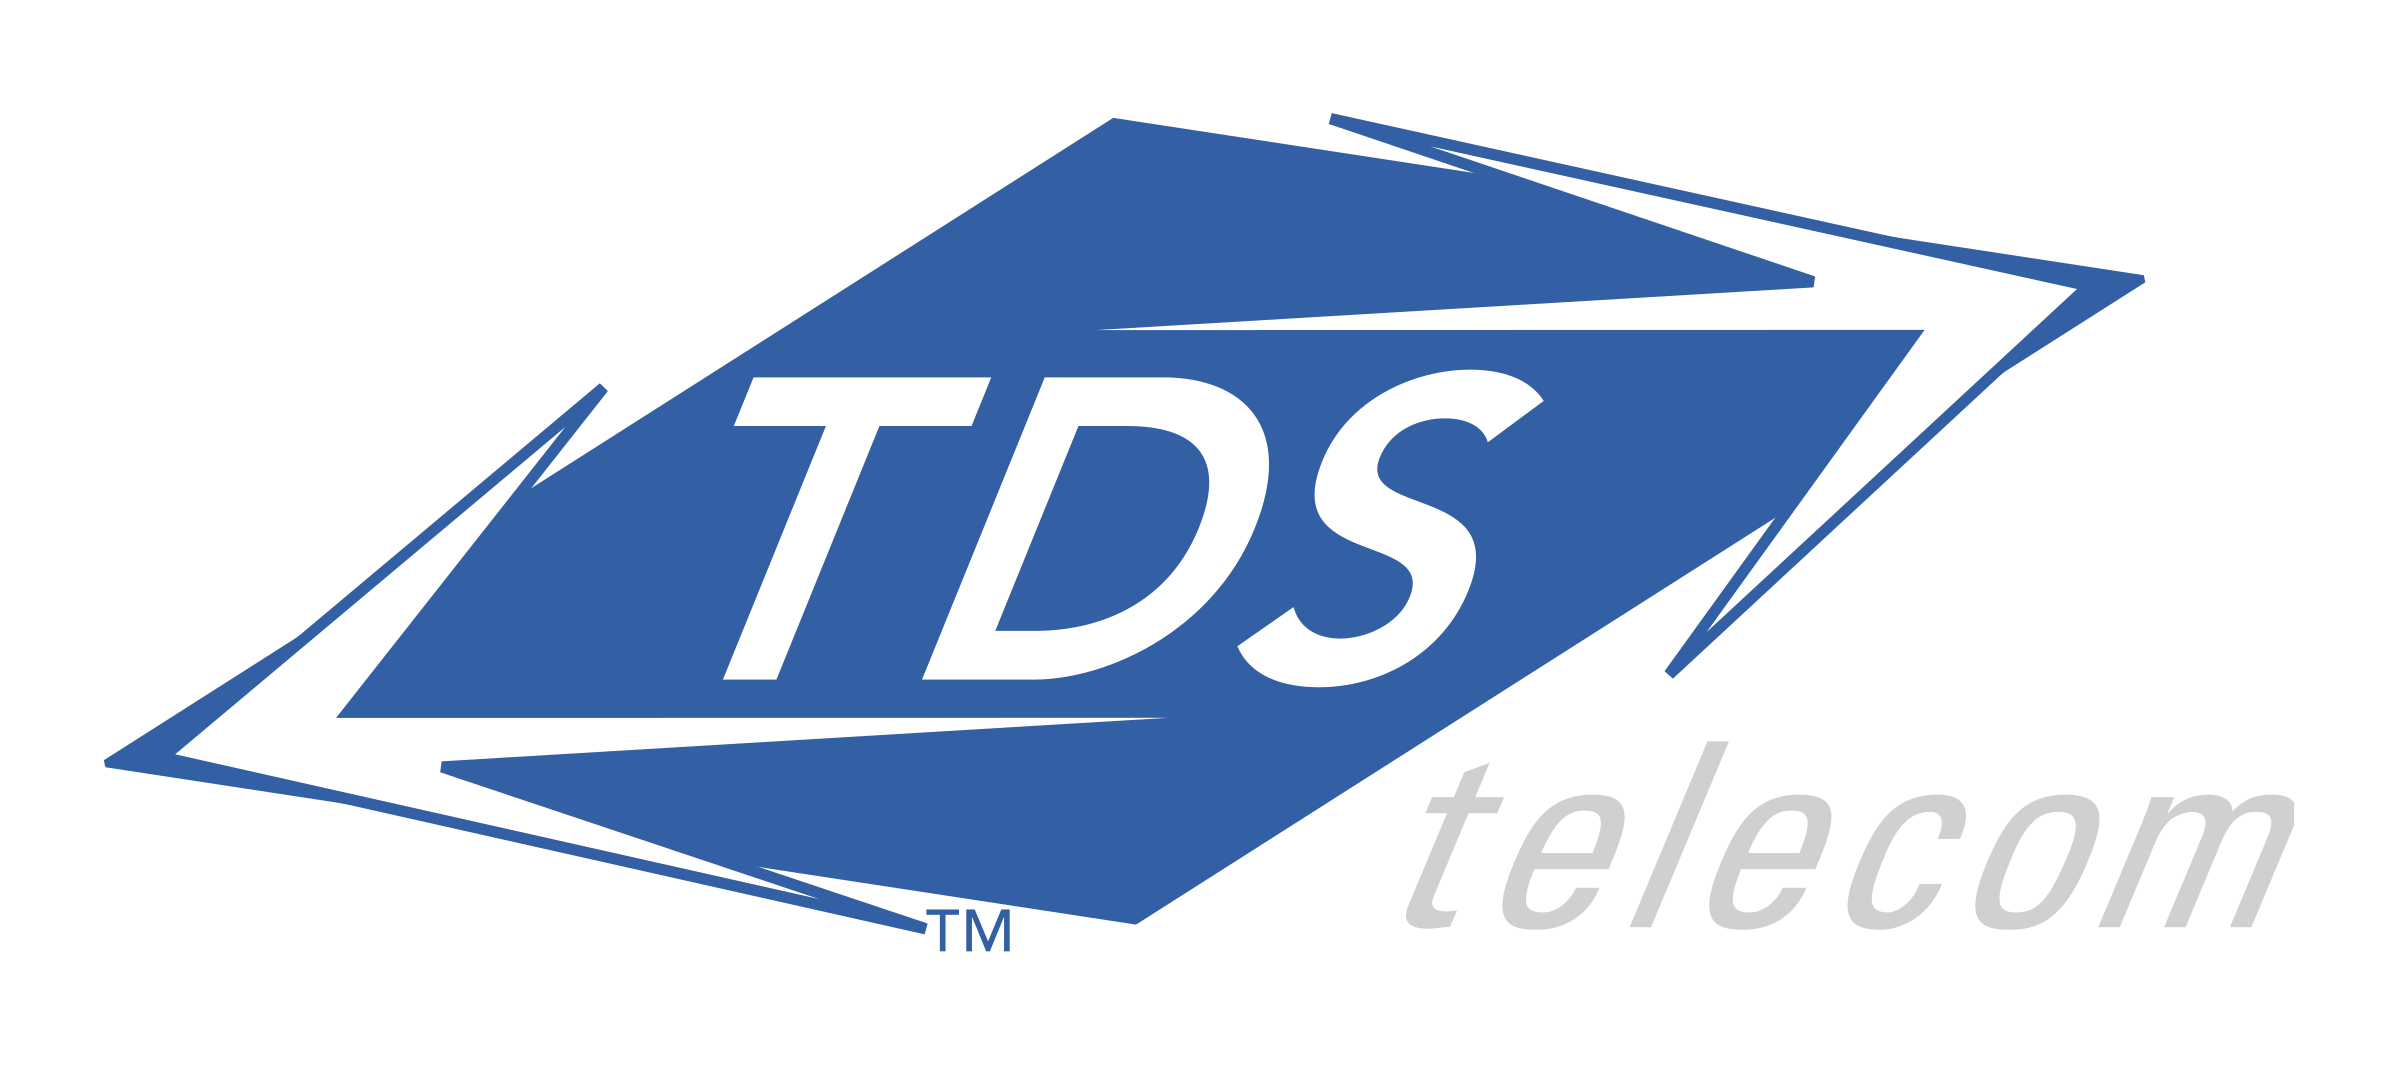 tds-telecom-1-logo-png-transparent